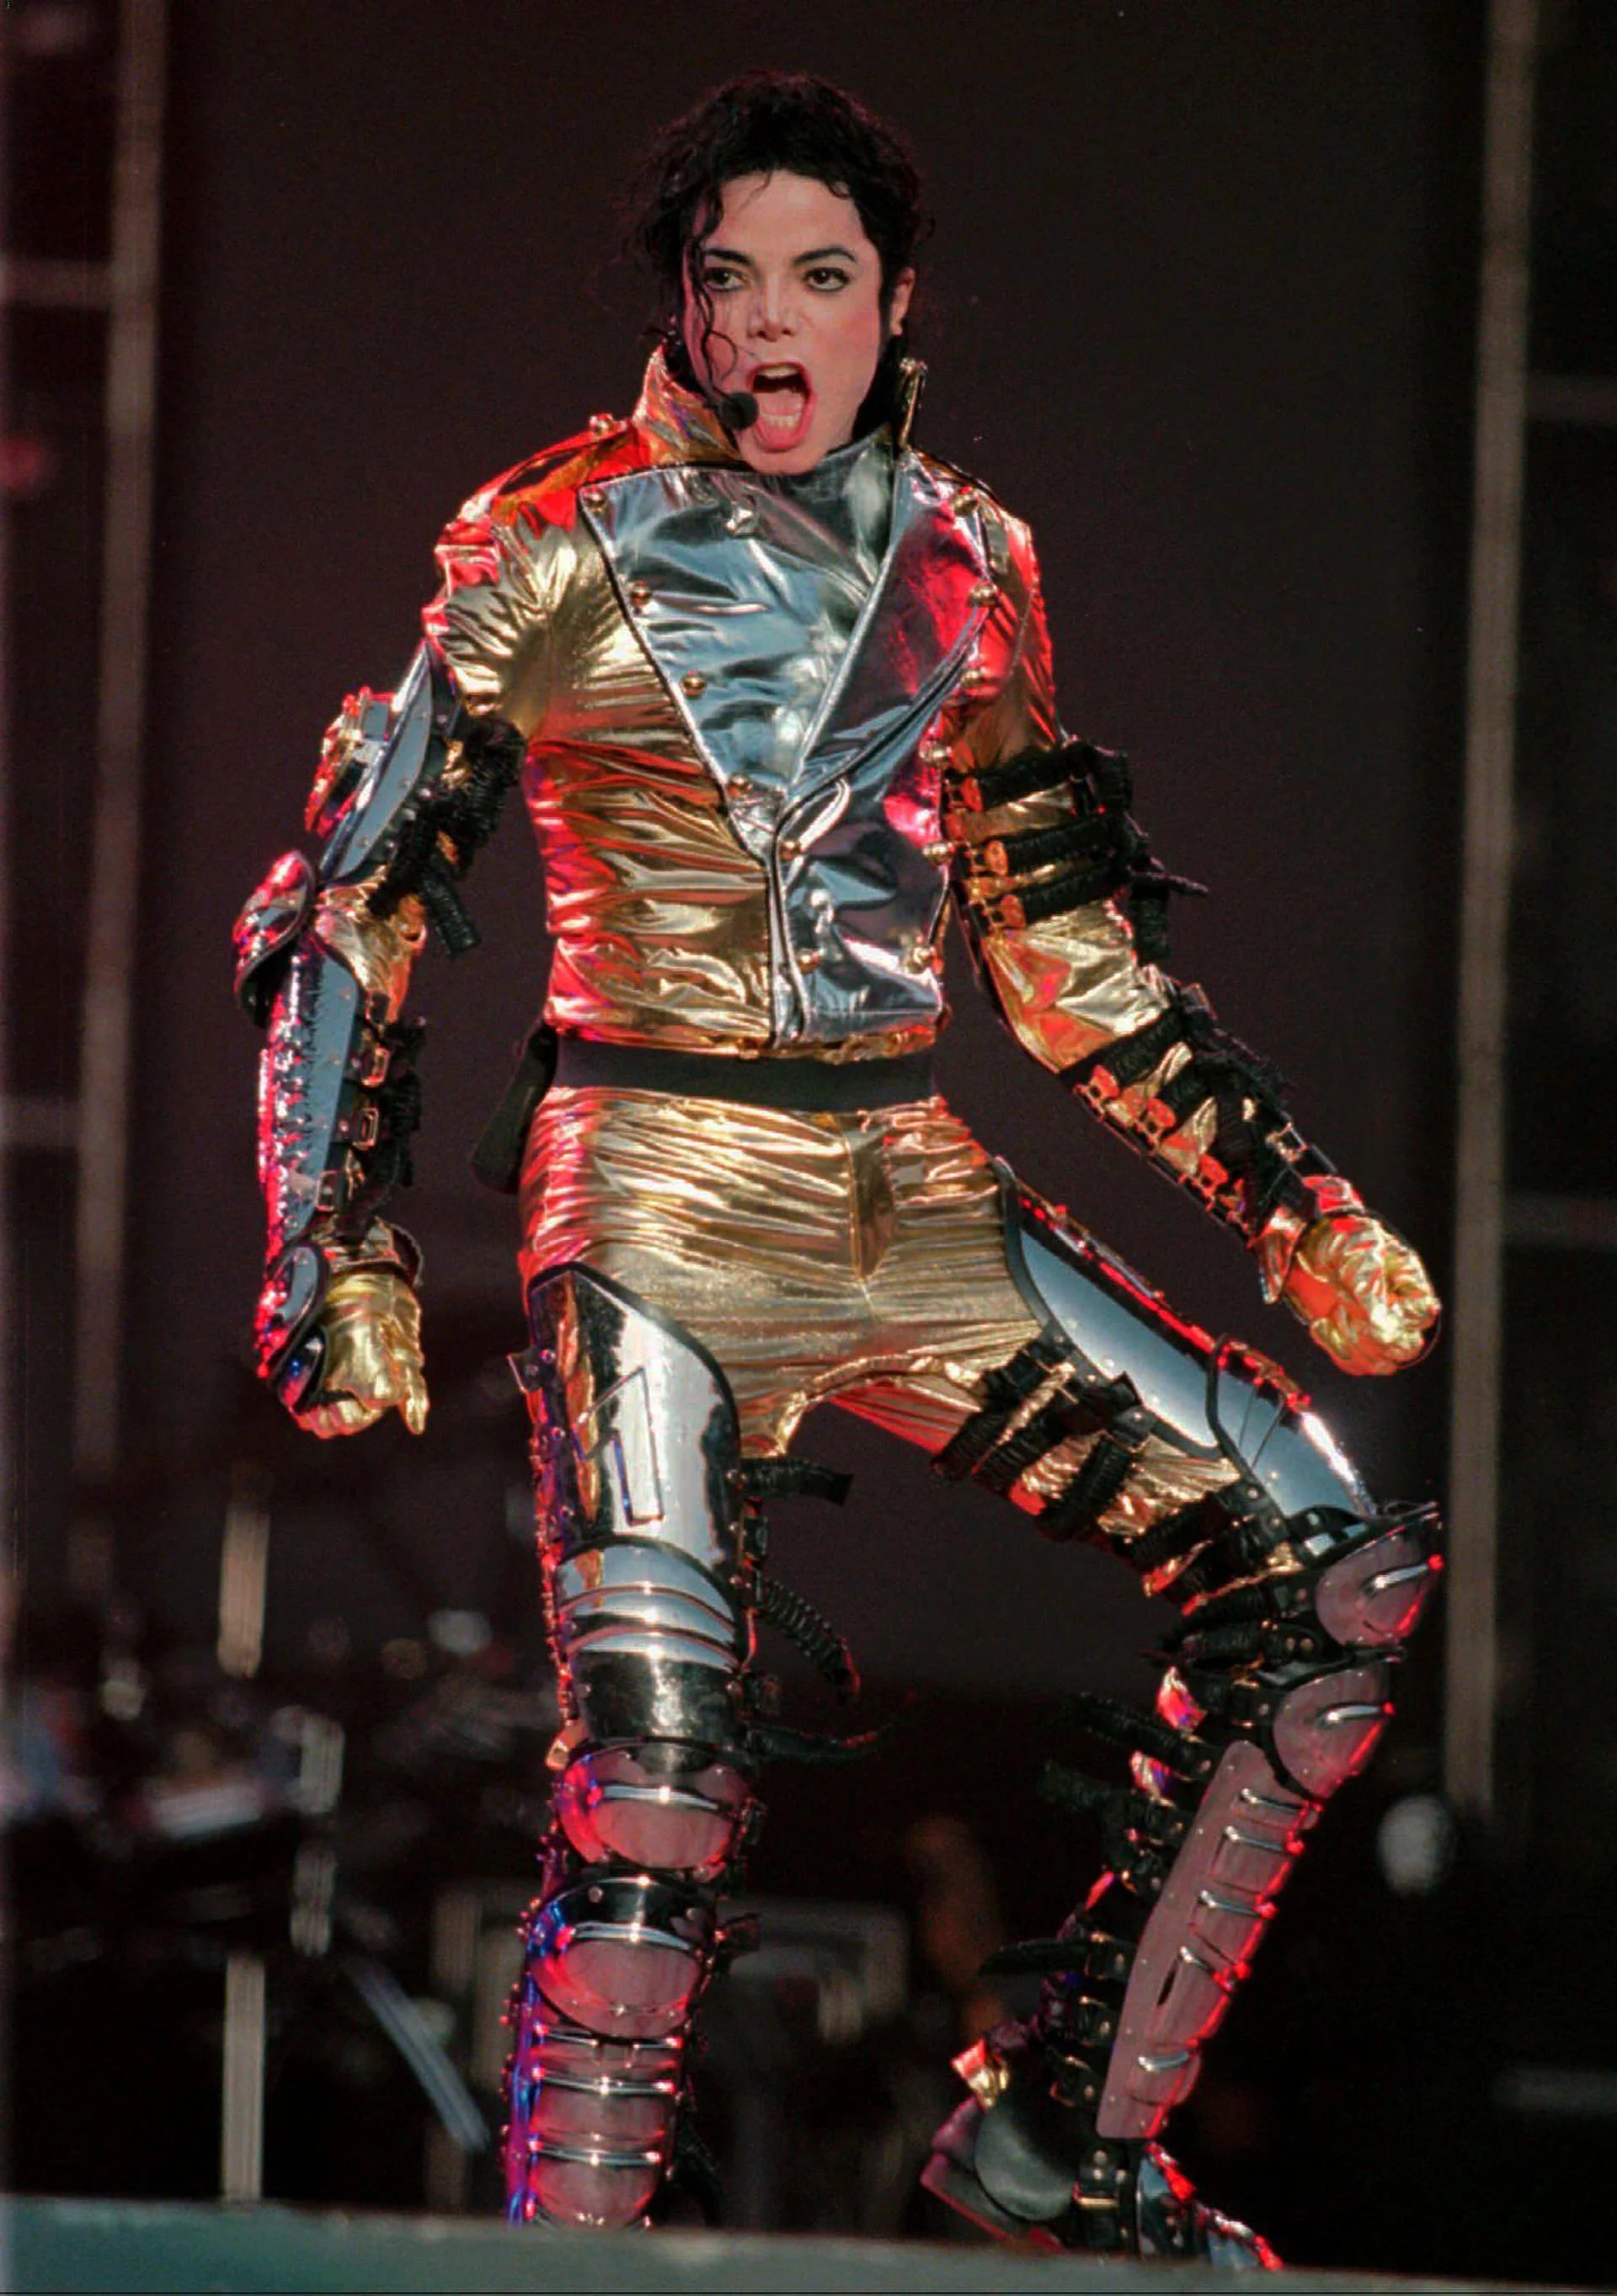 Michael Jackson cantando en su show de apertura del “HIStory Tour Part II” que realizó en Alemania y Europa (Mayo de 1997)